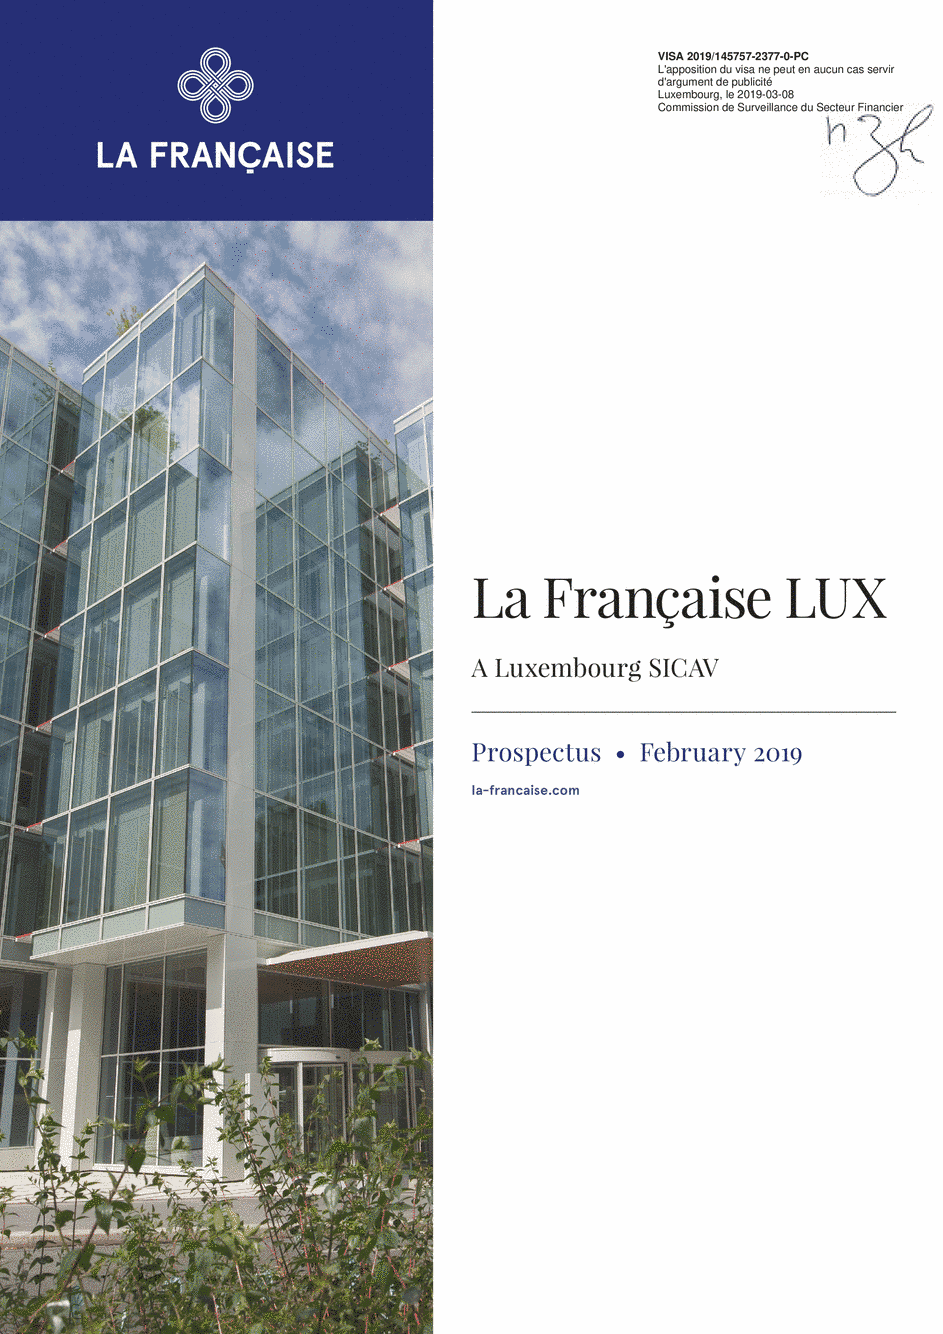 Prospectus La Française LUX - Forum Global Real Estate Securities - I (D) EUR - 01/12/2018 - Anglais